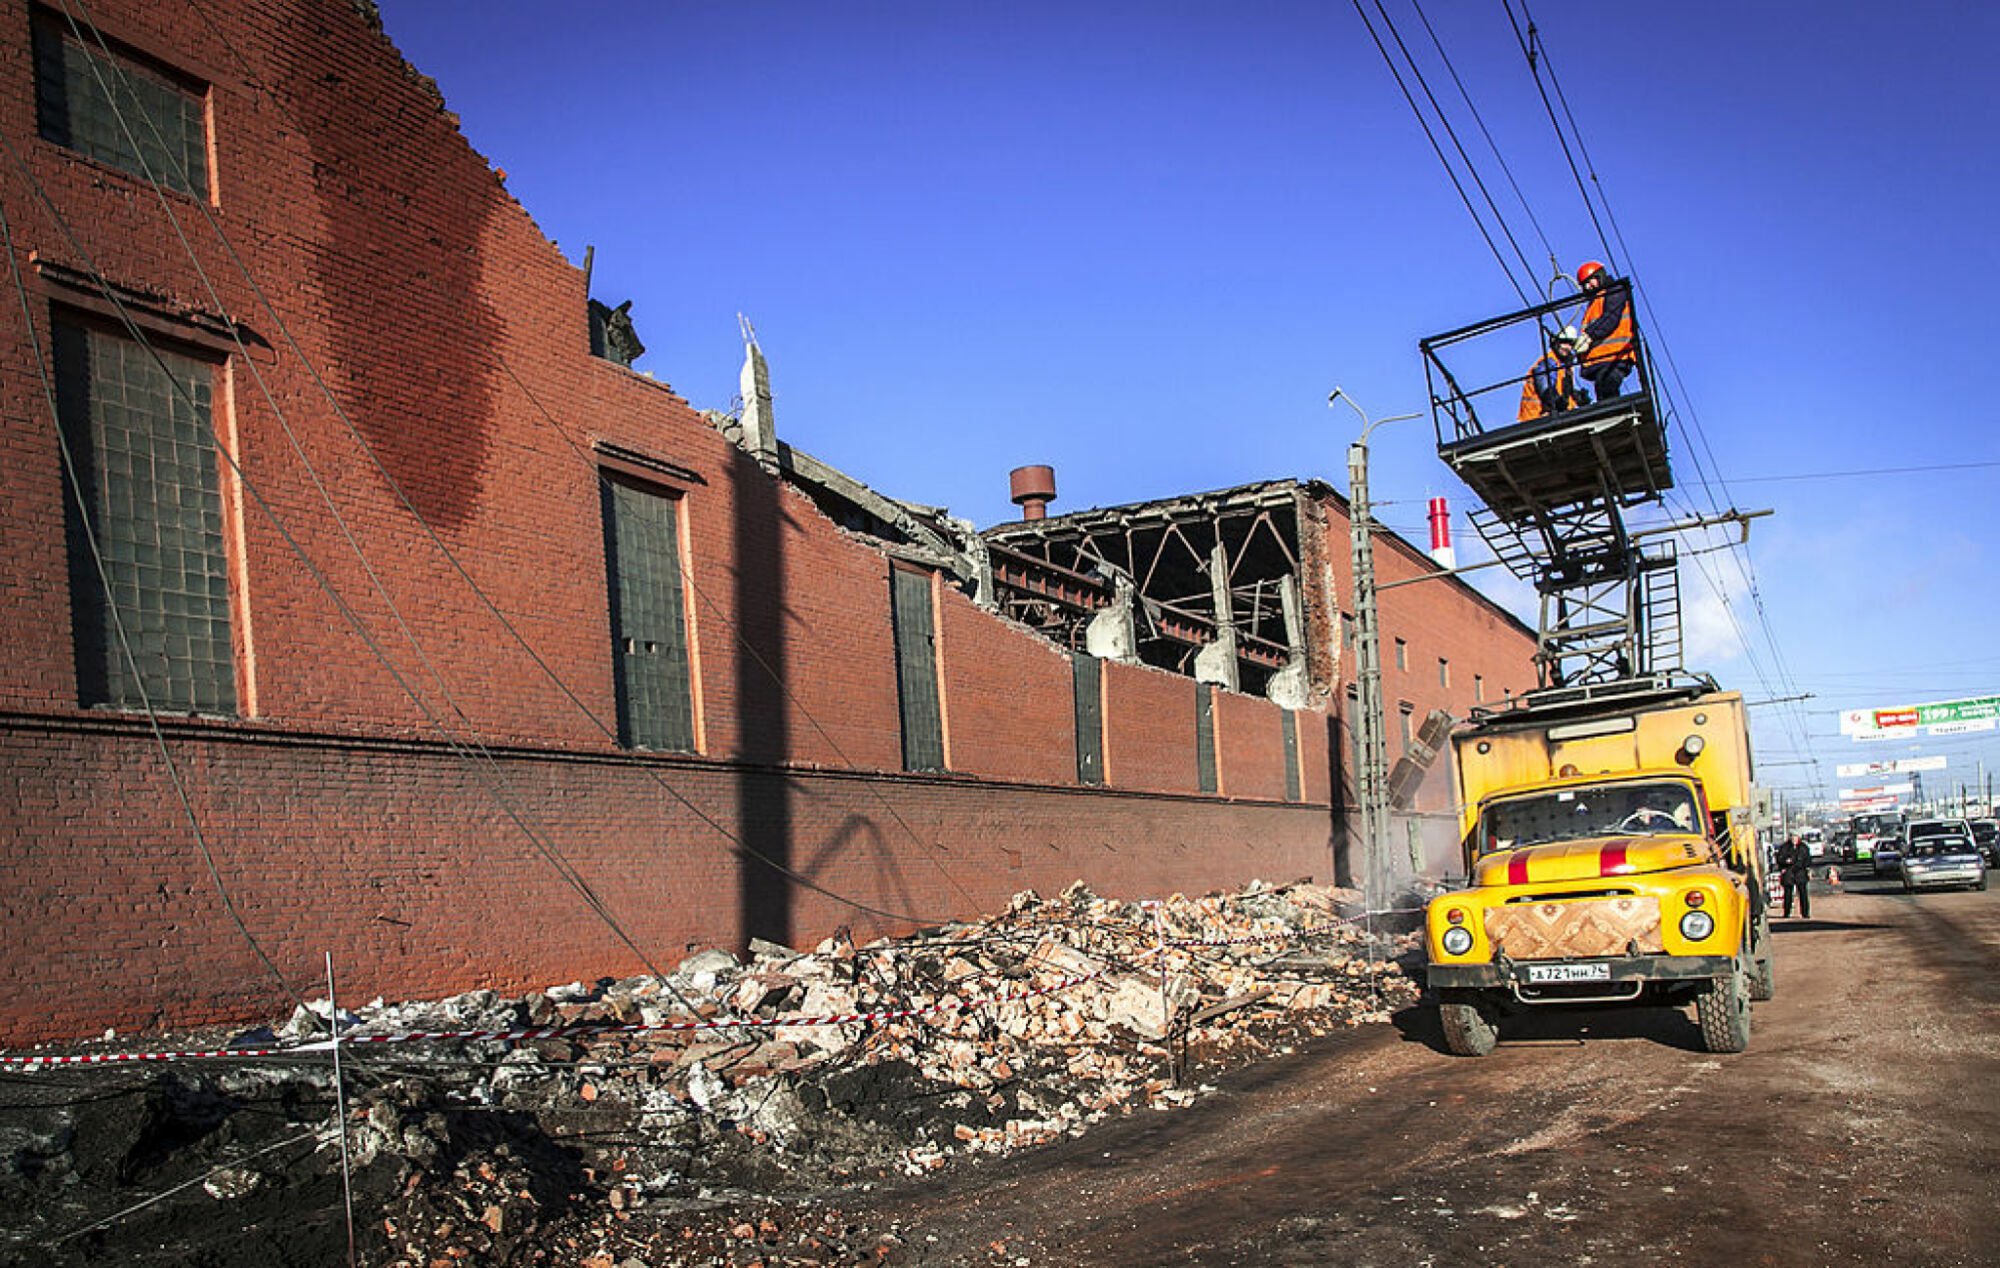 Crews repairing damage after the Chelyabinsk meteorite explosion